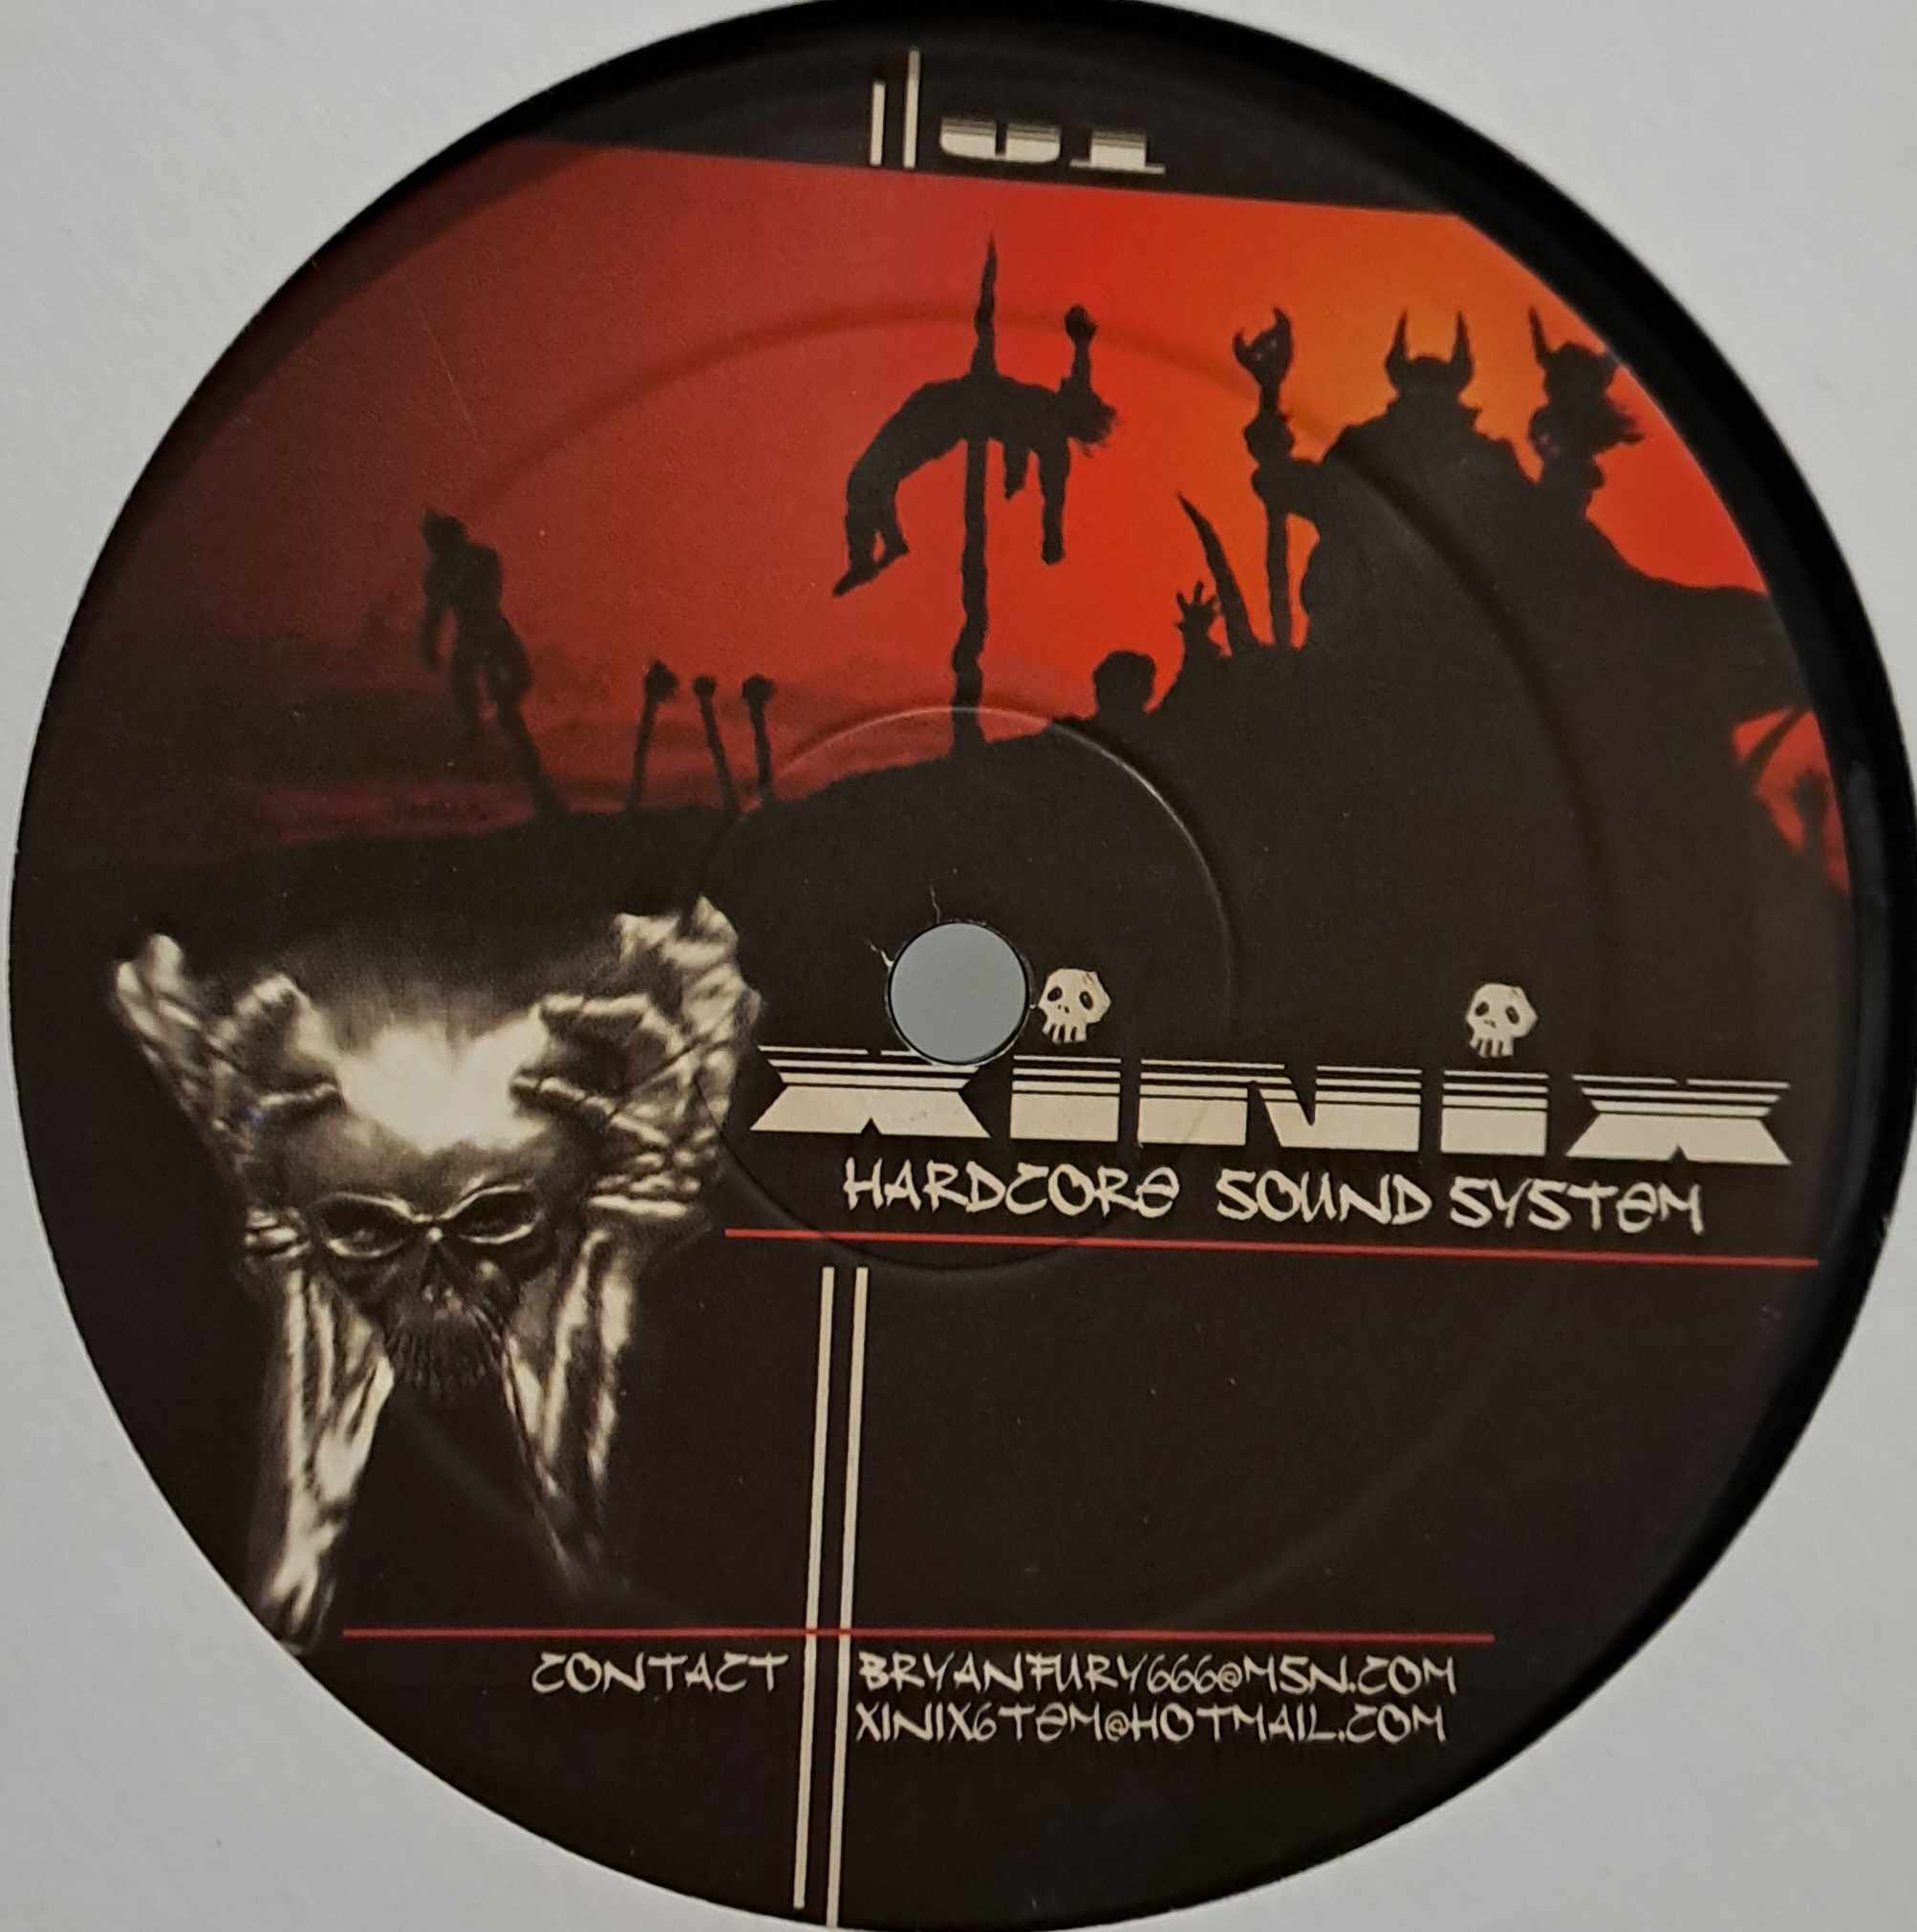 Xinix 01 - vinyle hardcore